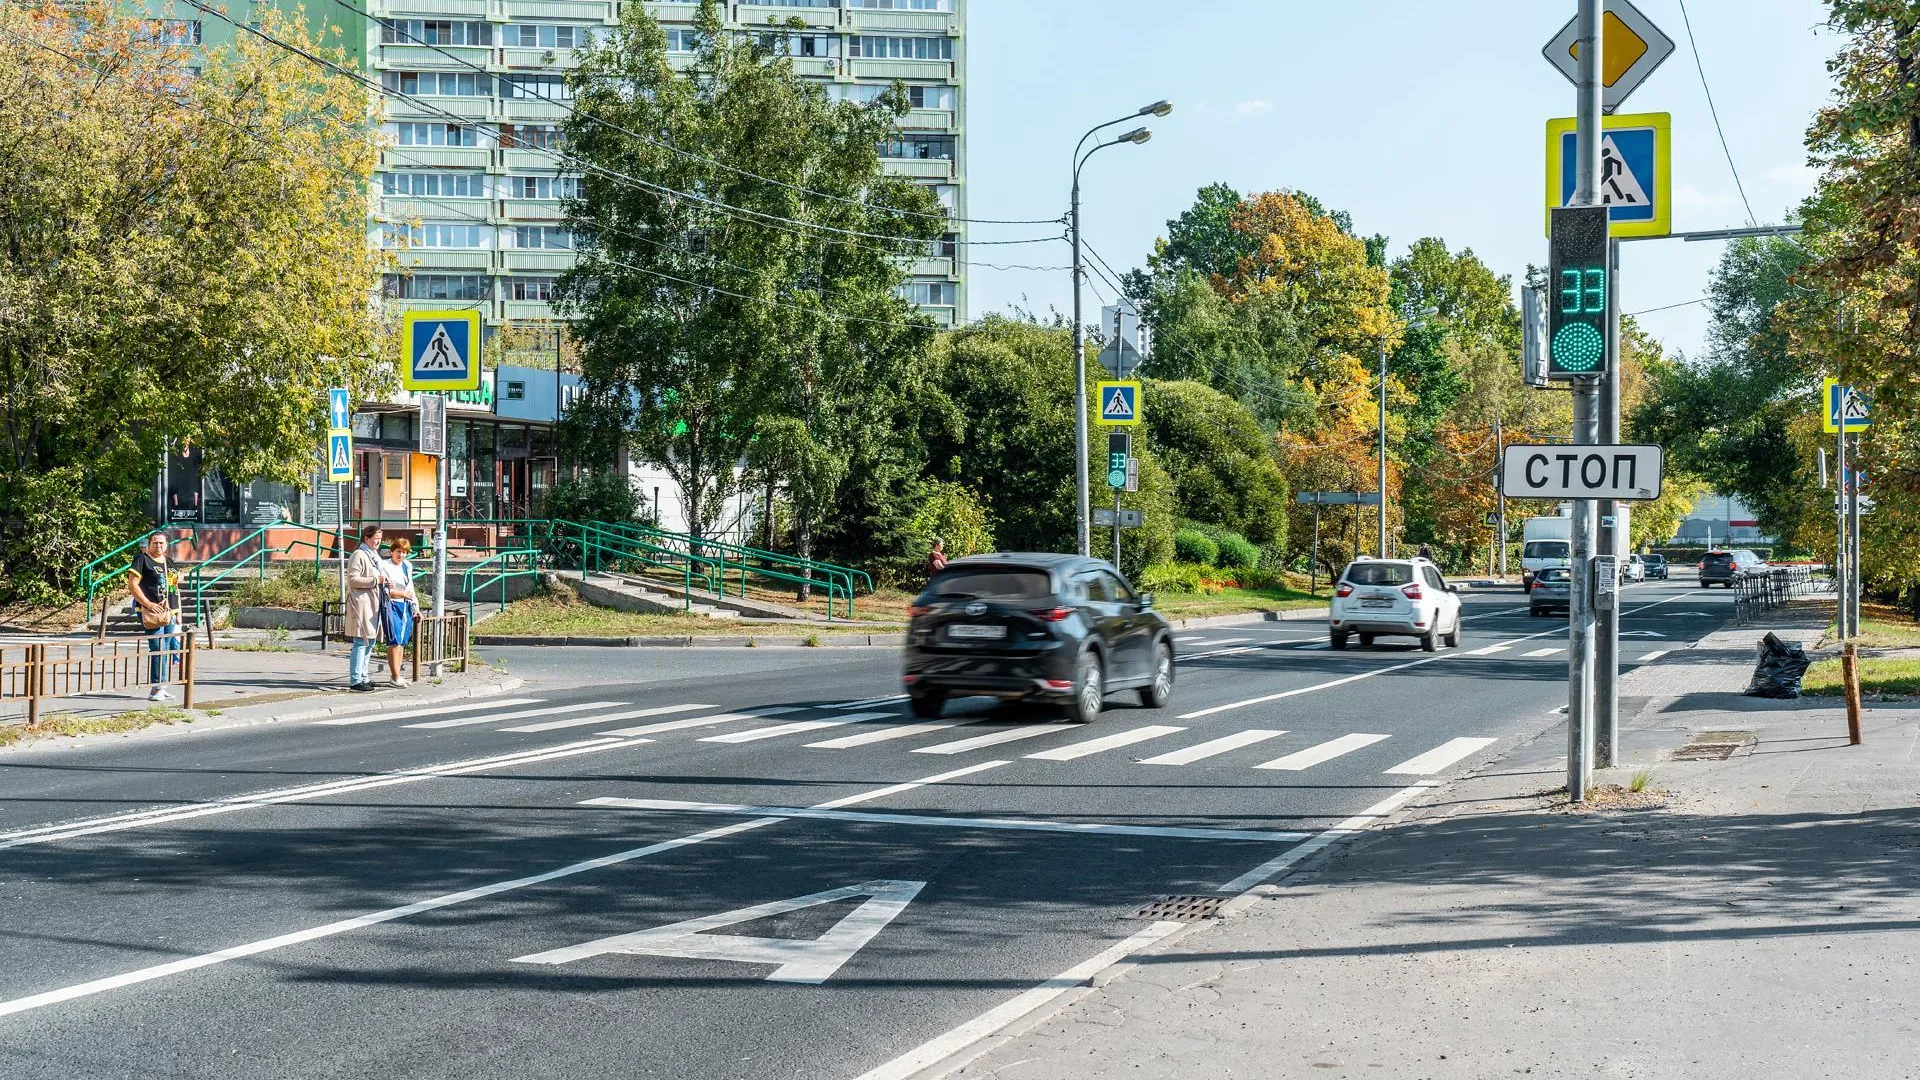 Работу шести светофоров на трех шоссе оптимизировали в Подмосковье